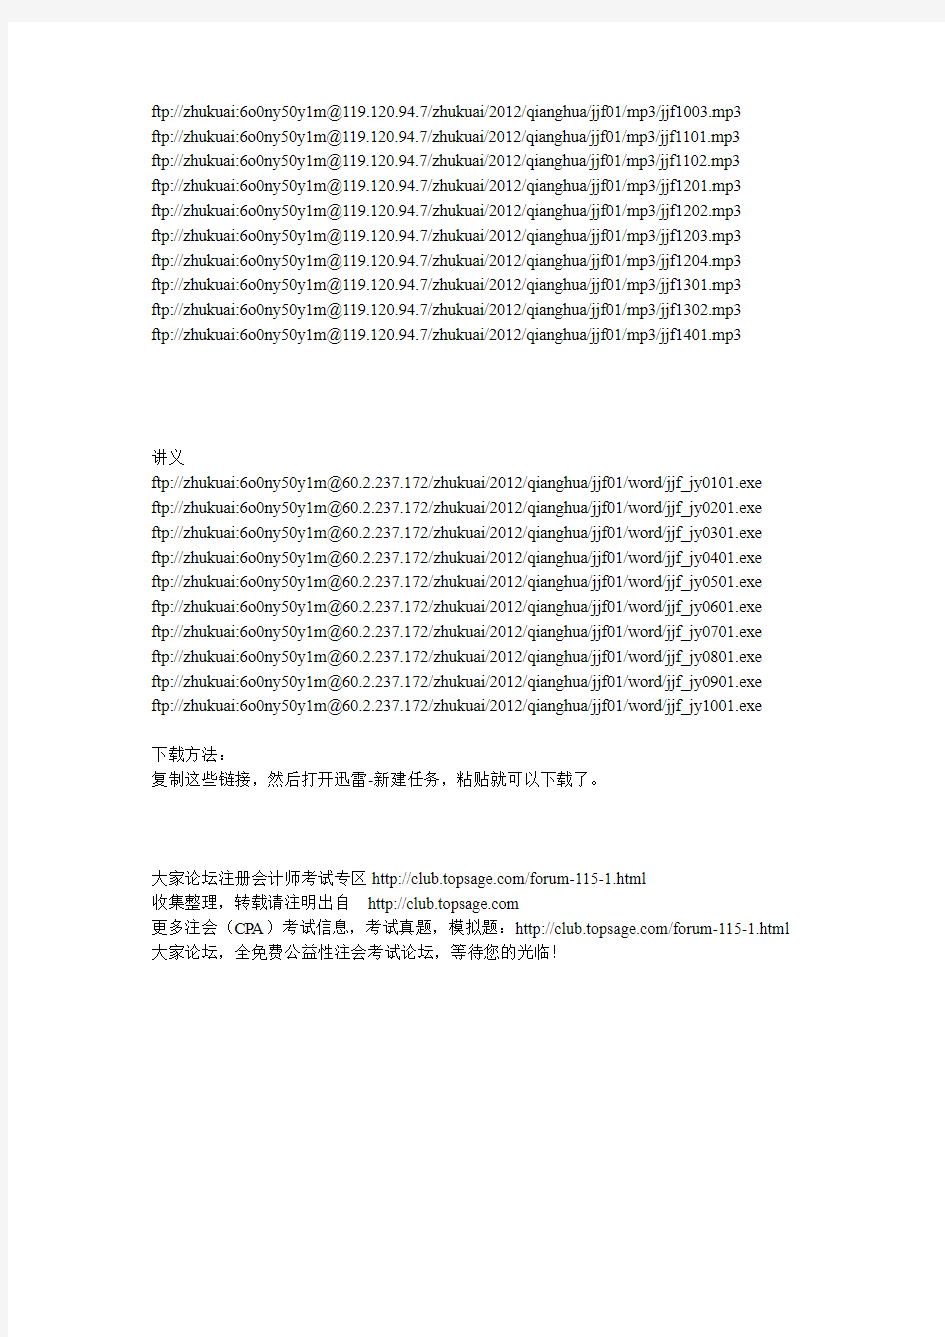 2012年注册会计师经济法(赵俊峰强化班)下载地址